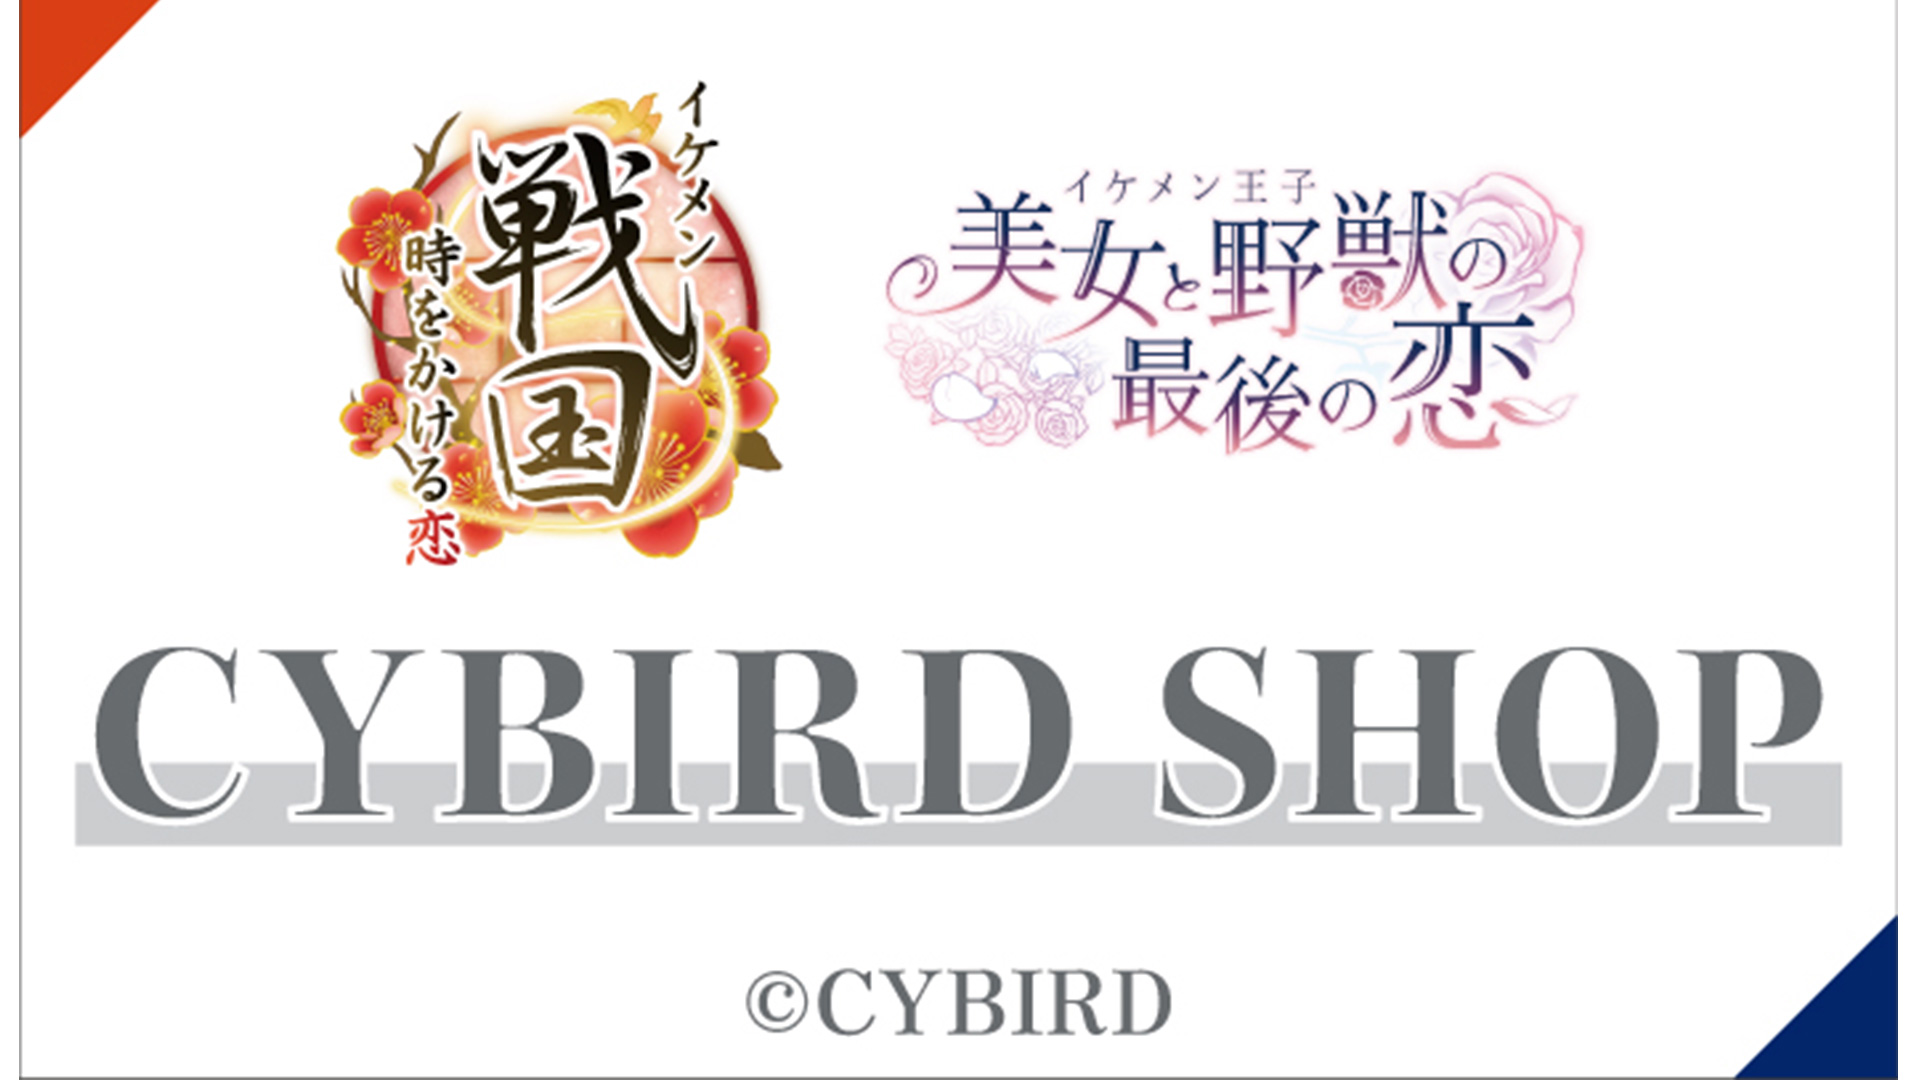 CYBIRD SHOP